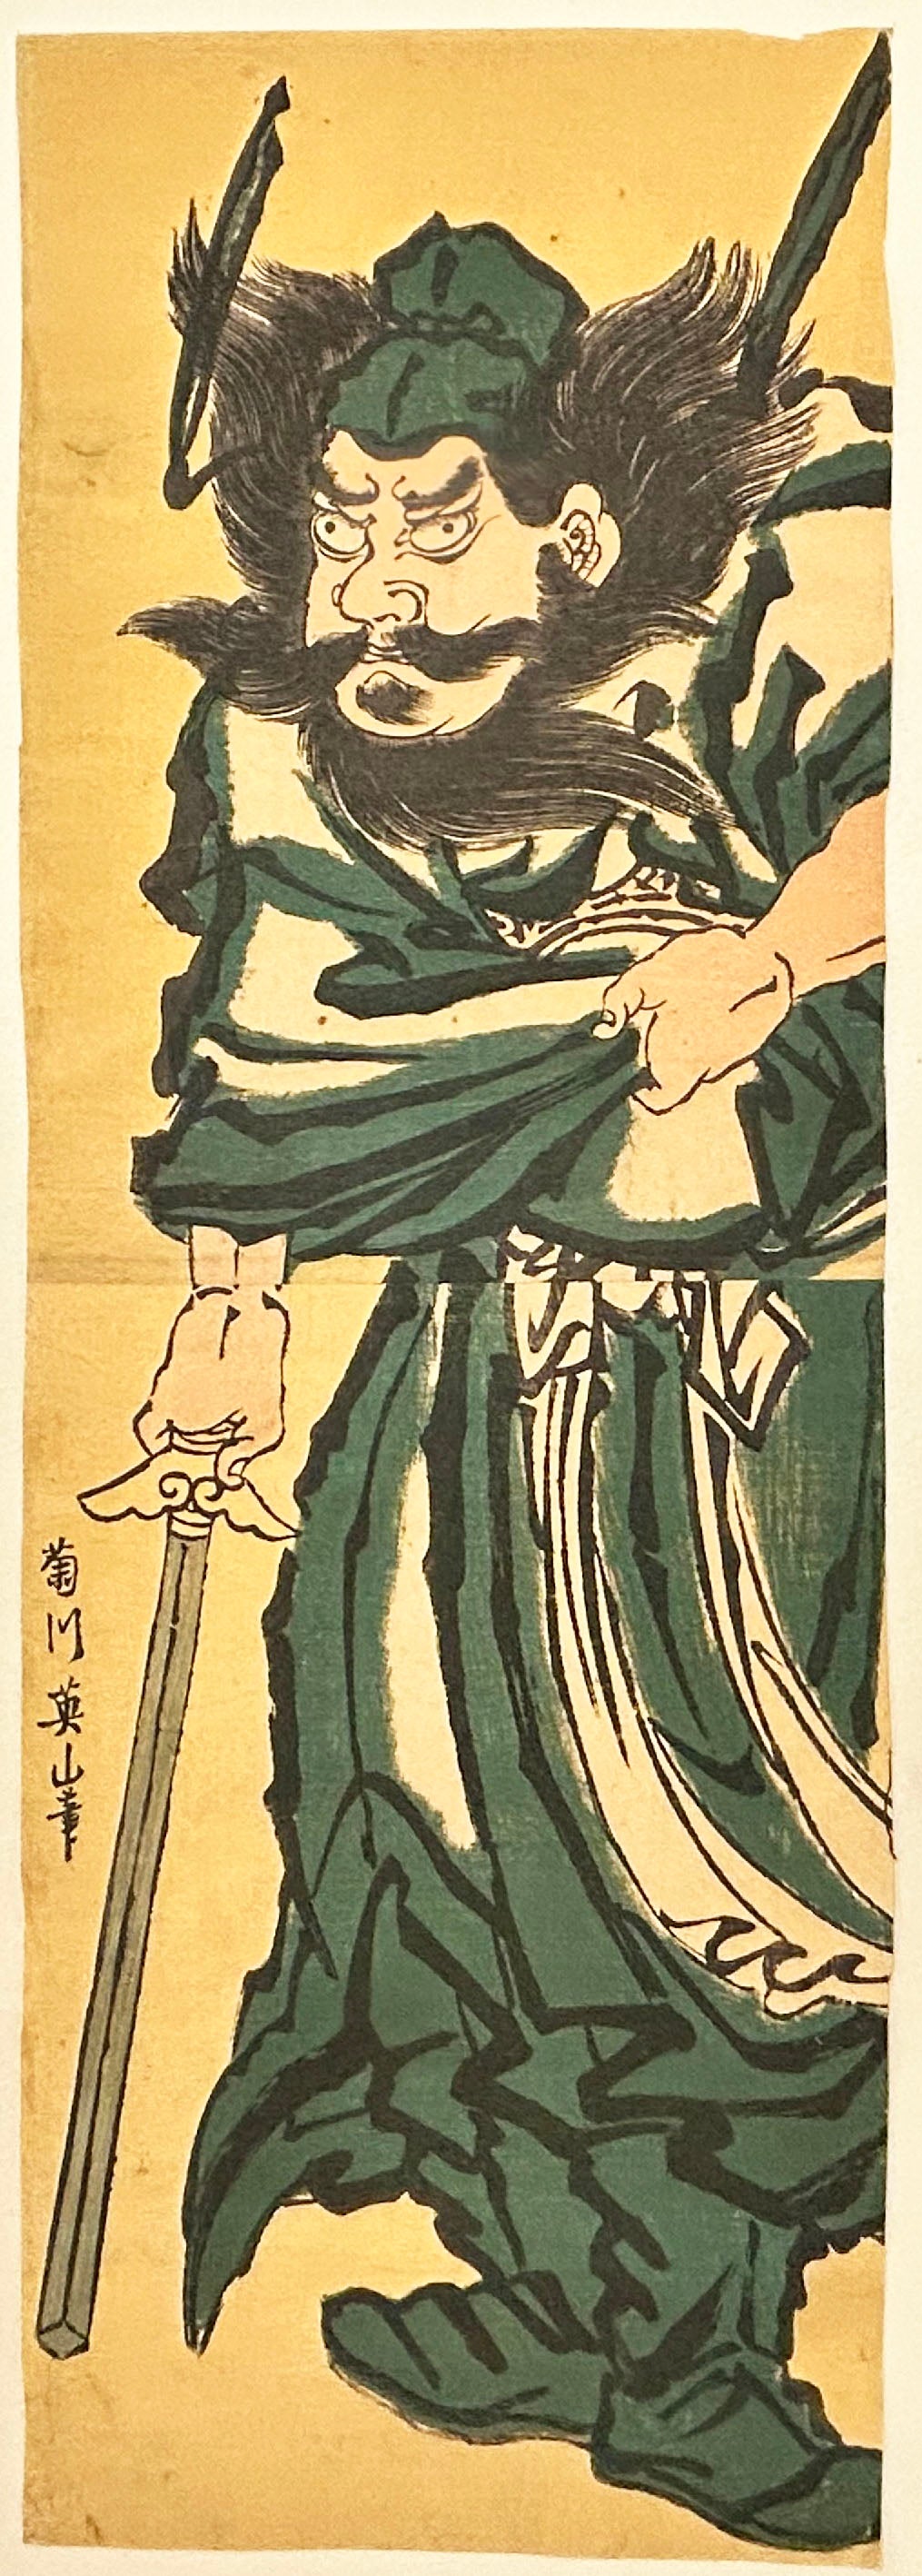 Shoki (Zhong Kui), le chasseur de démons, debout tenant son épée. c.1820-1830.